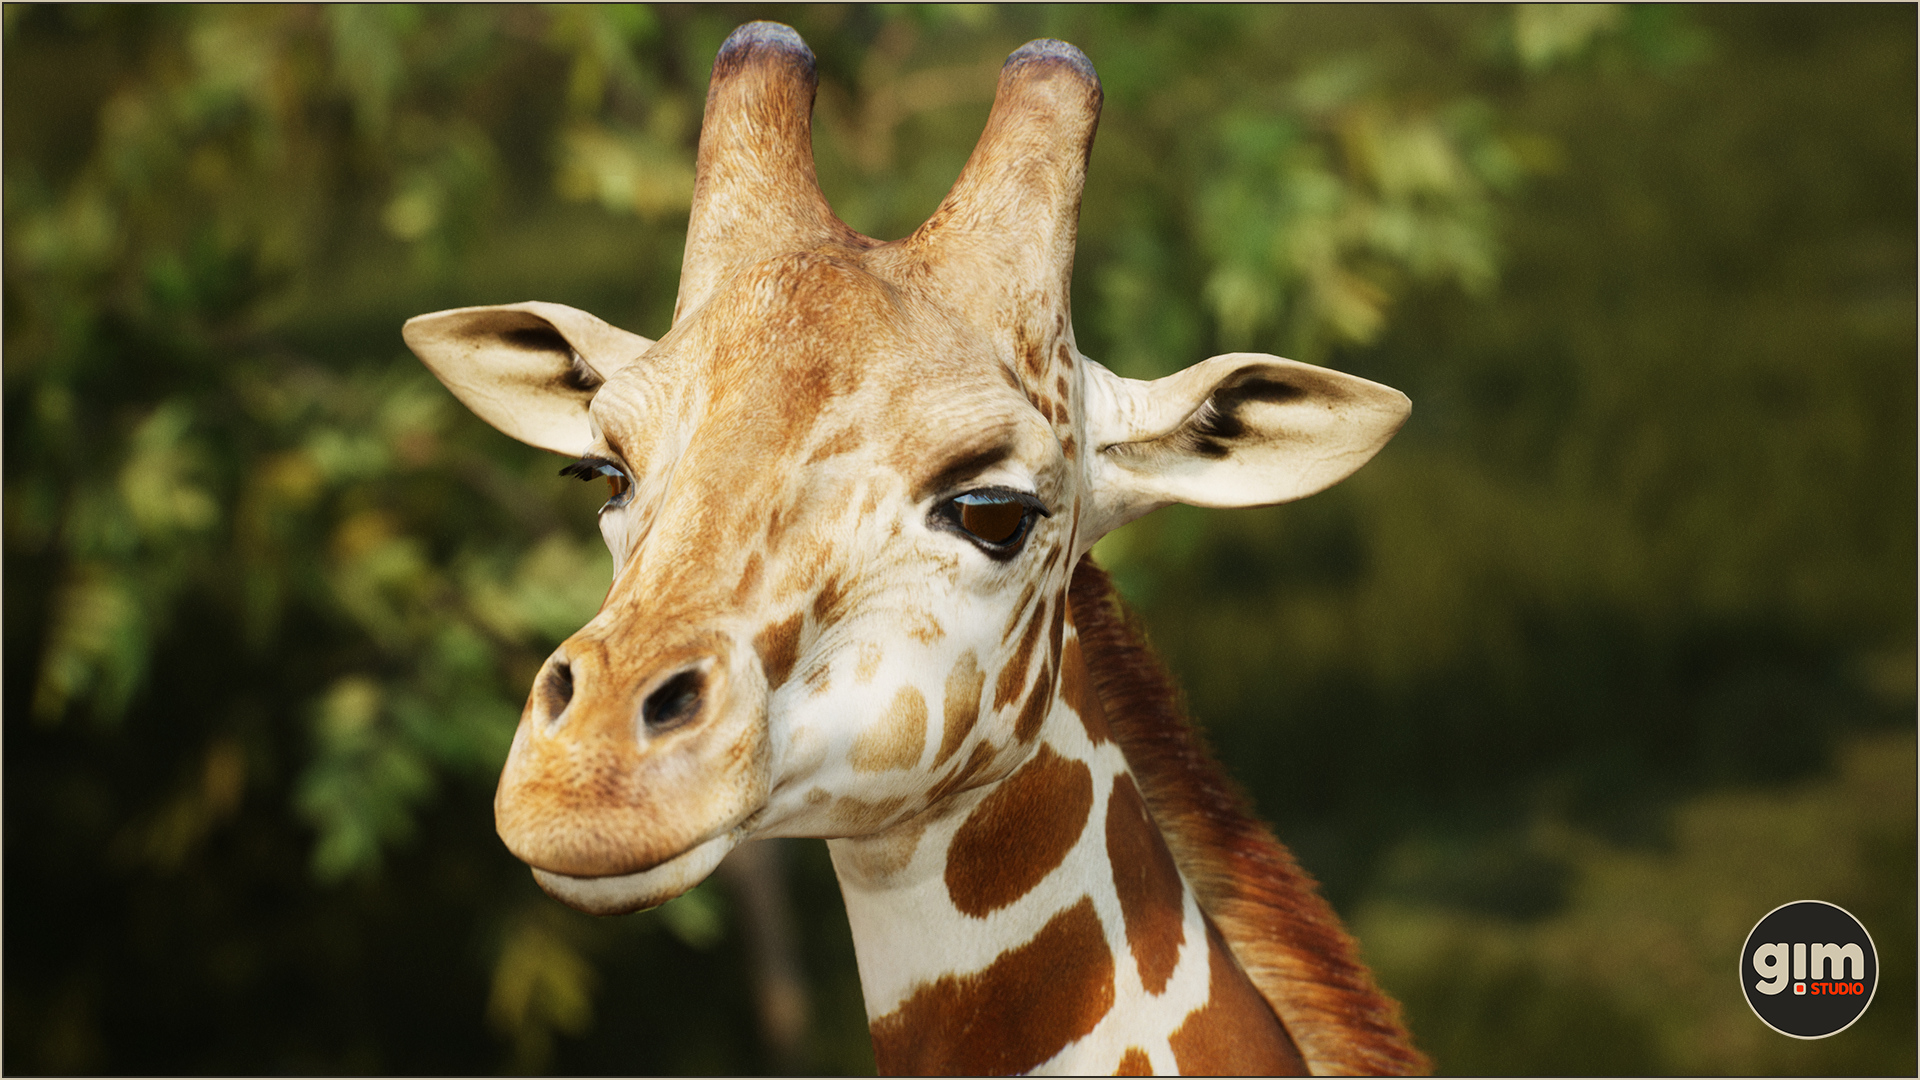 Male Giraffe in close-up shot.